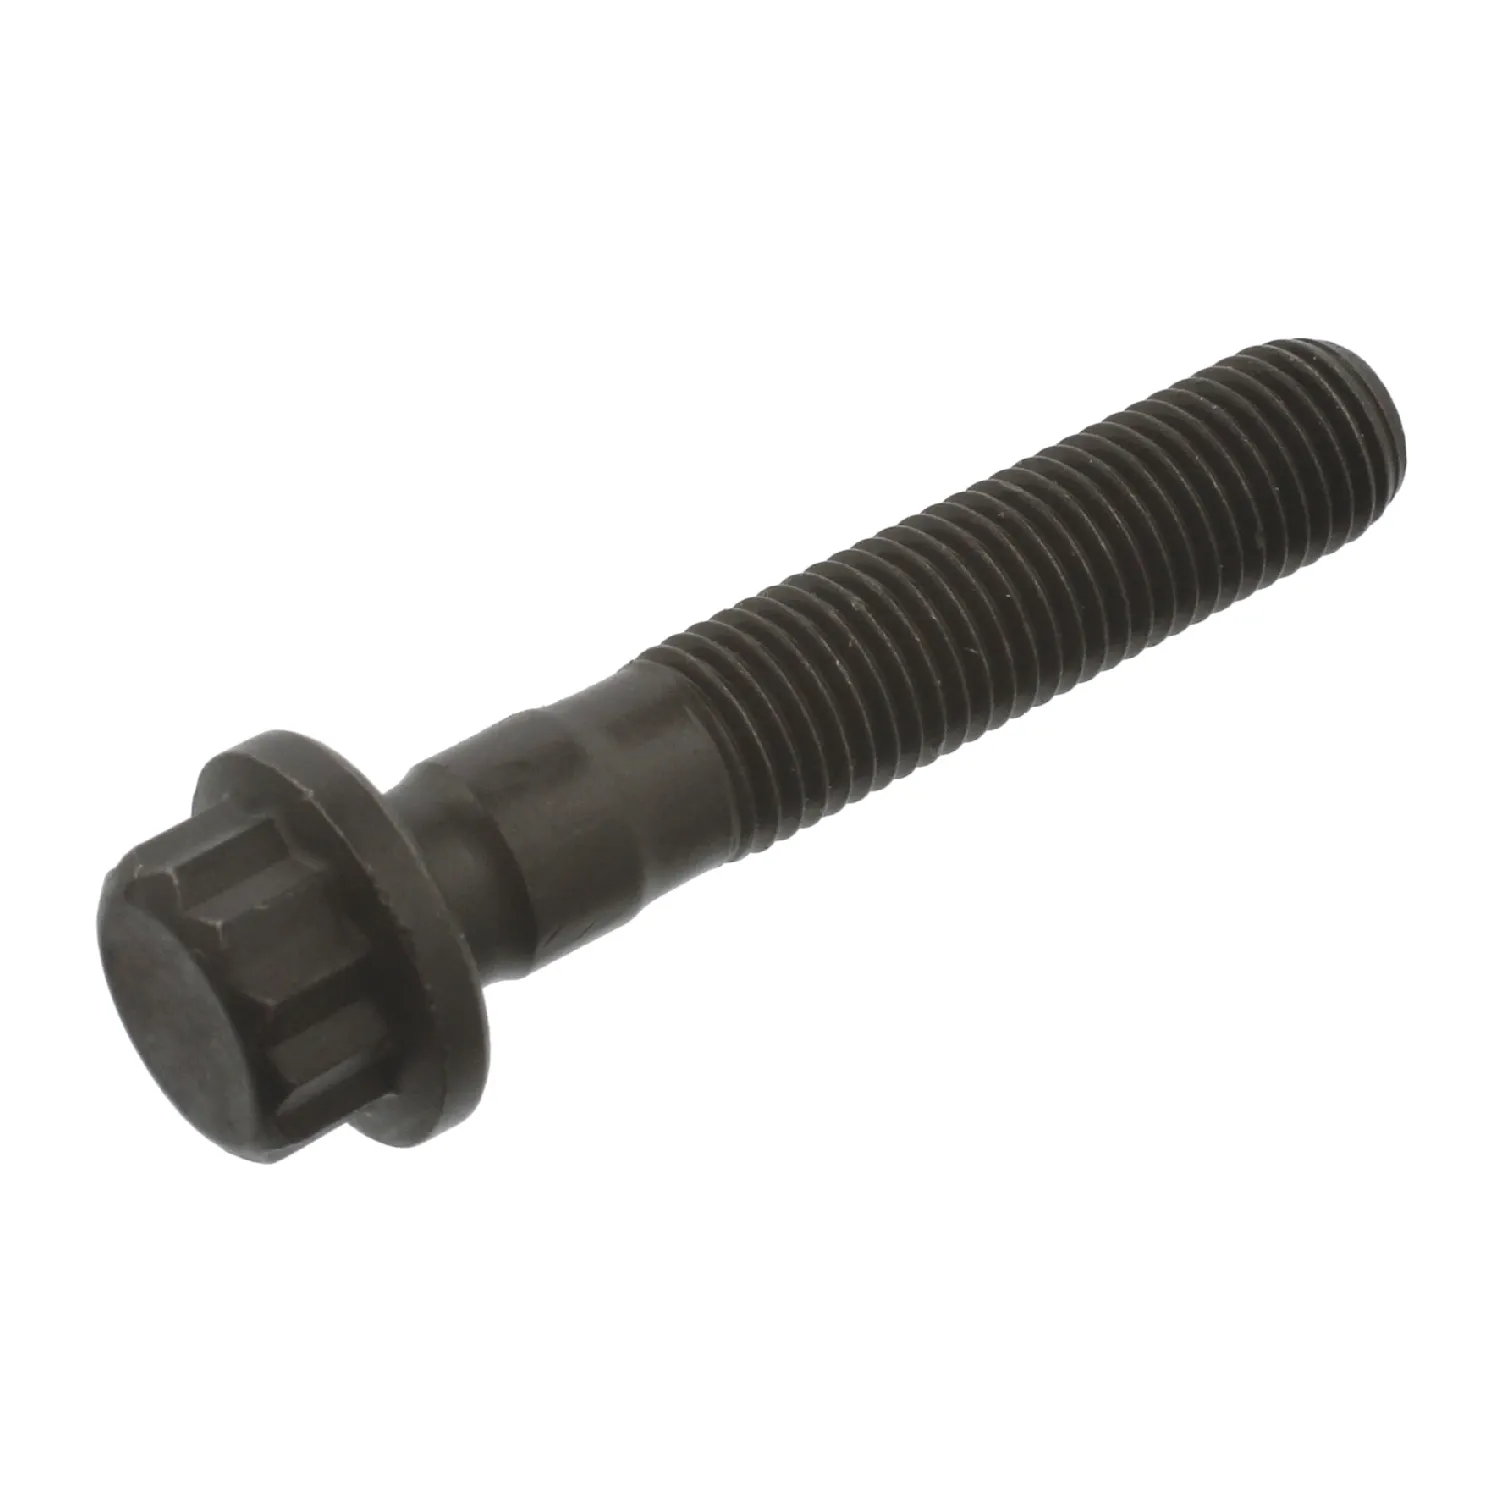 Connecting rod screw